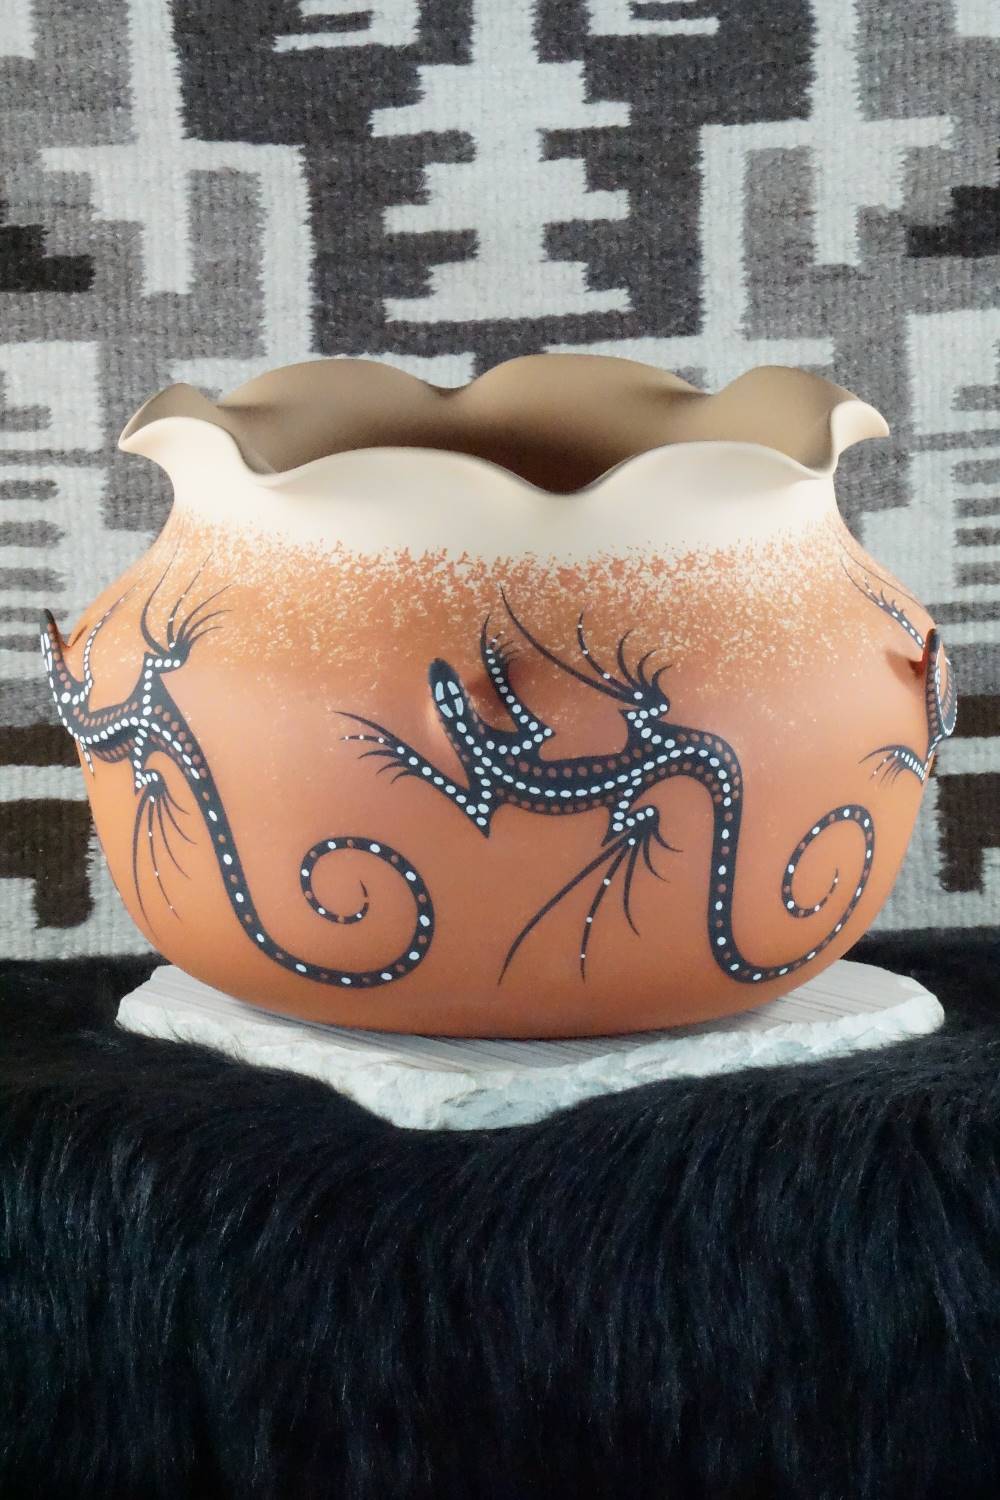 Zuni Pottery - Adam Cellicion